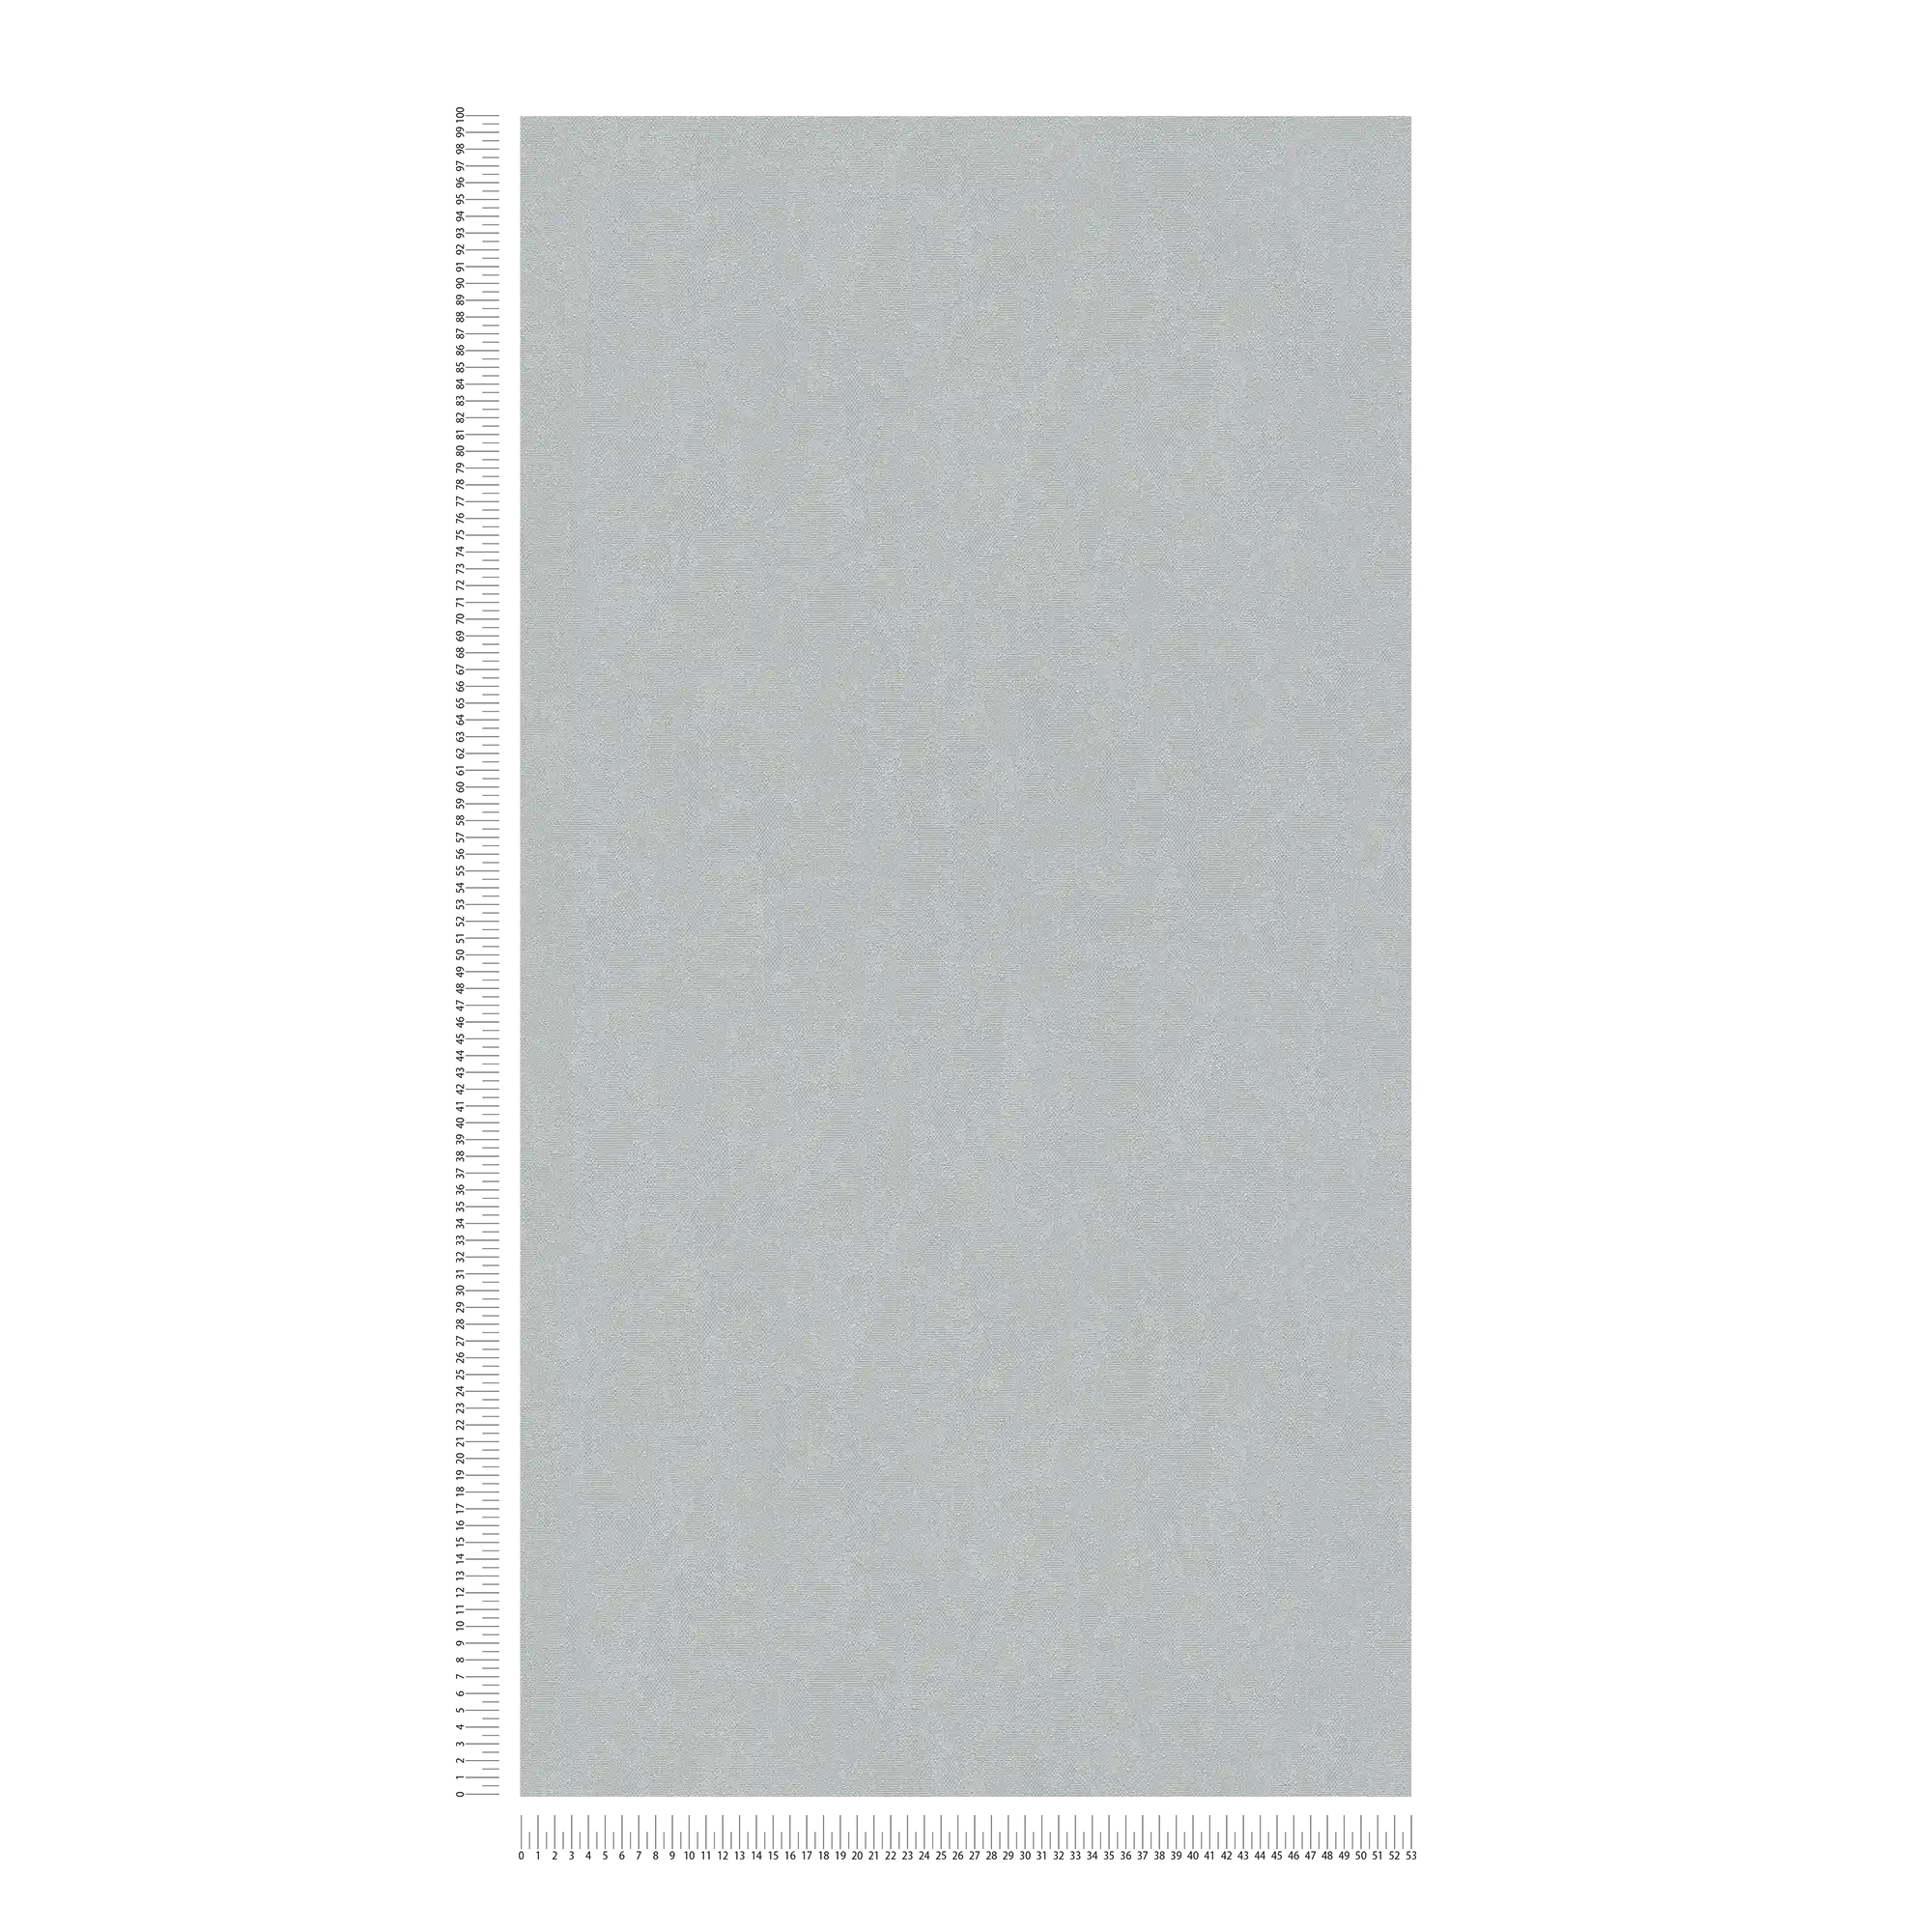             Carta da parati liscia con effetto texture - grigio
        